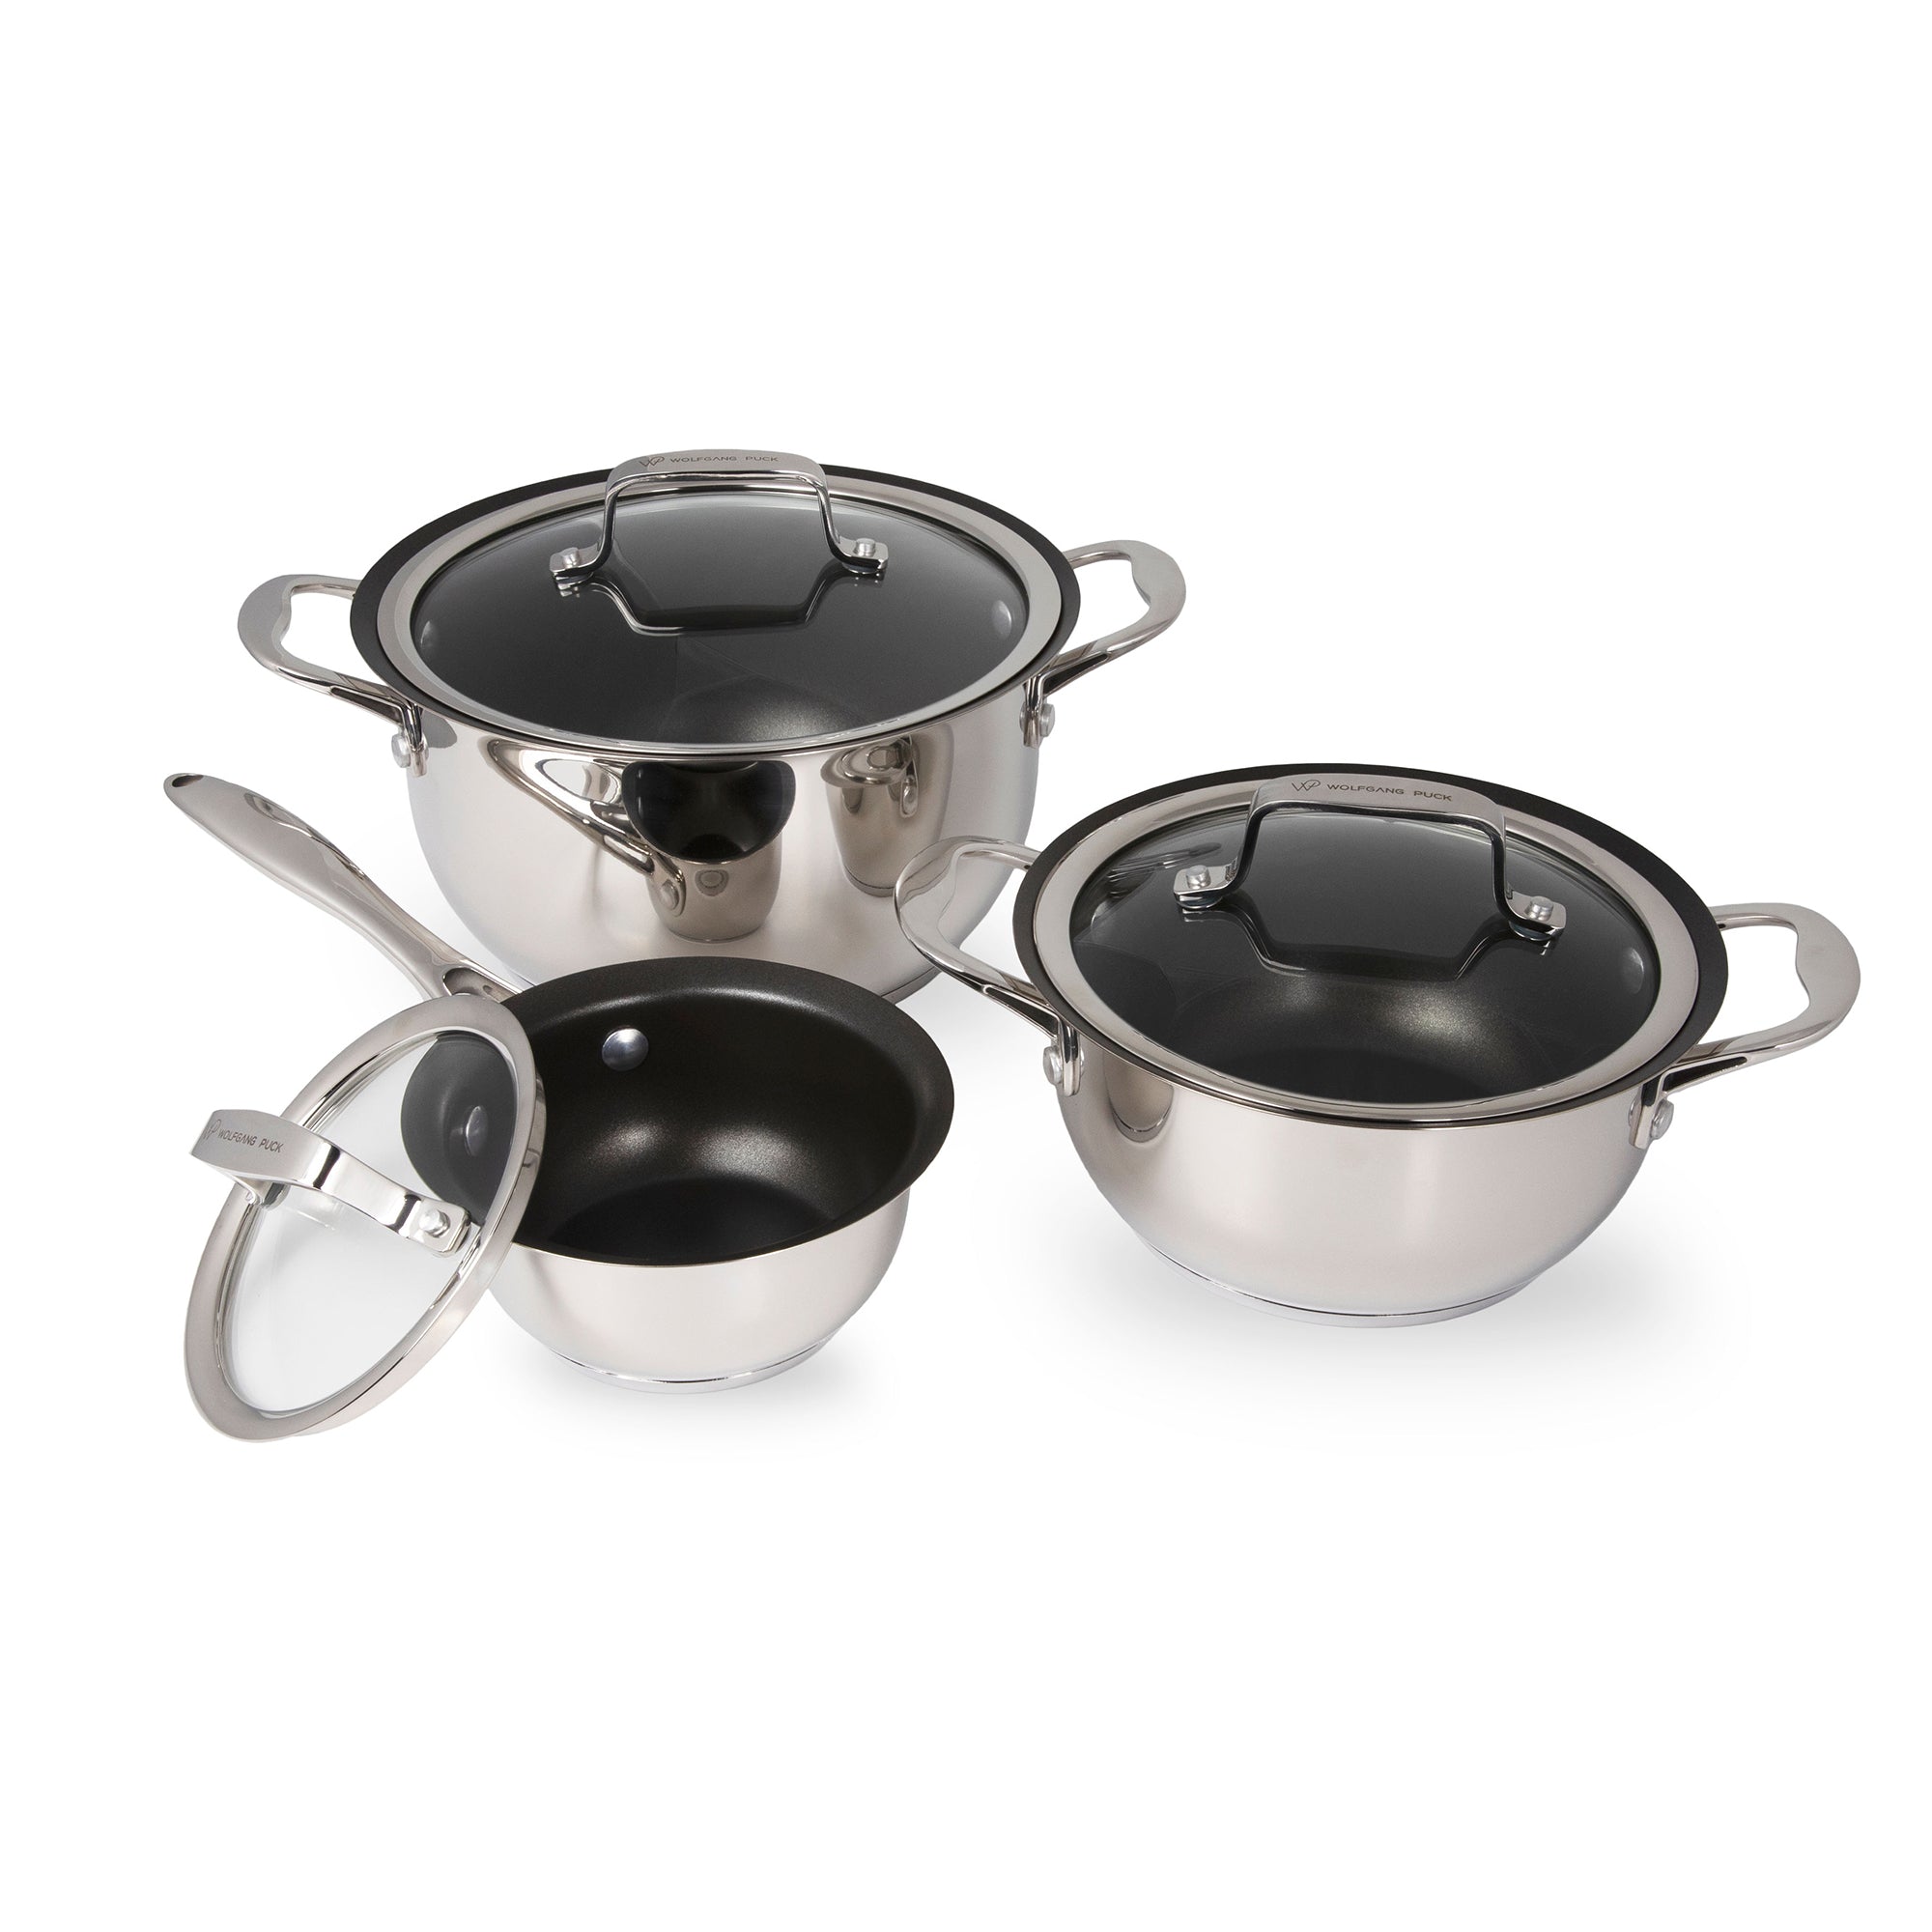 6-Piece Set Pots & Pans Basic Kitchen Cookware, Black Non-Stick